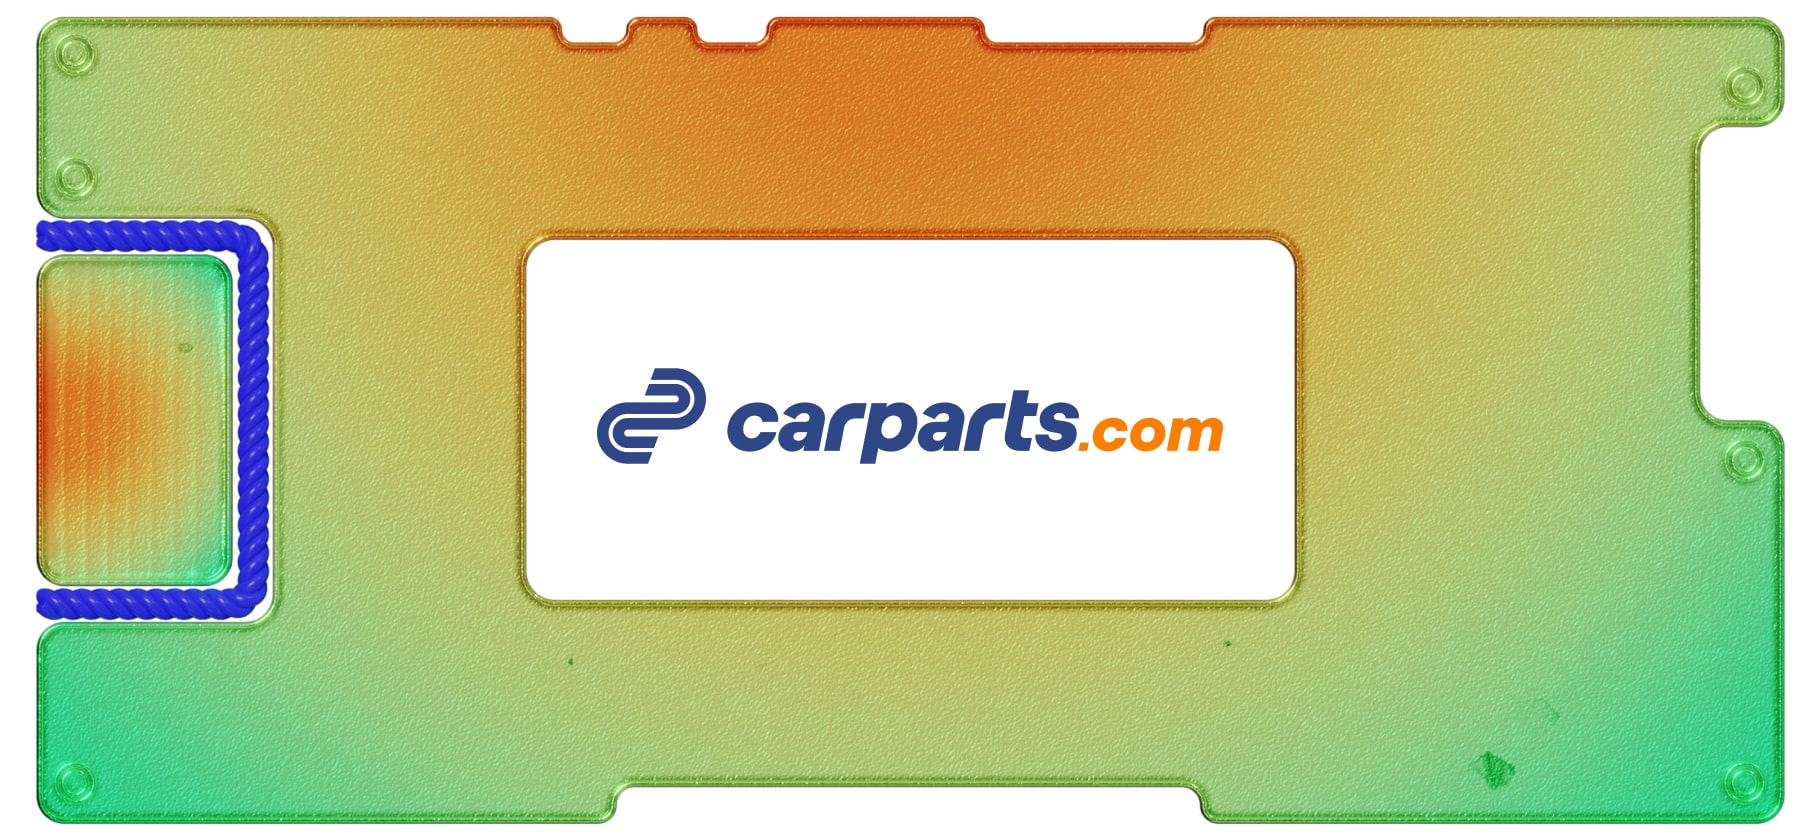 Инвестидея: CarParts.com, потому что машины — ходовой товар